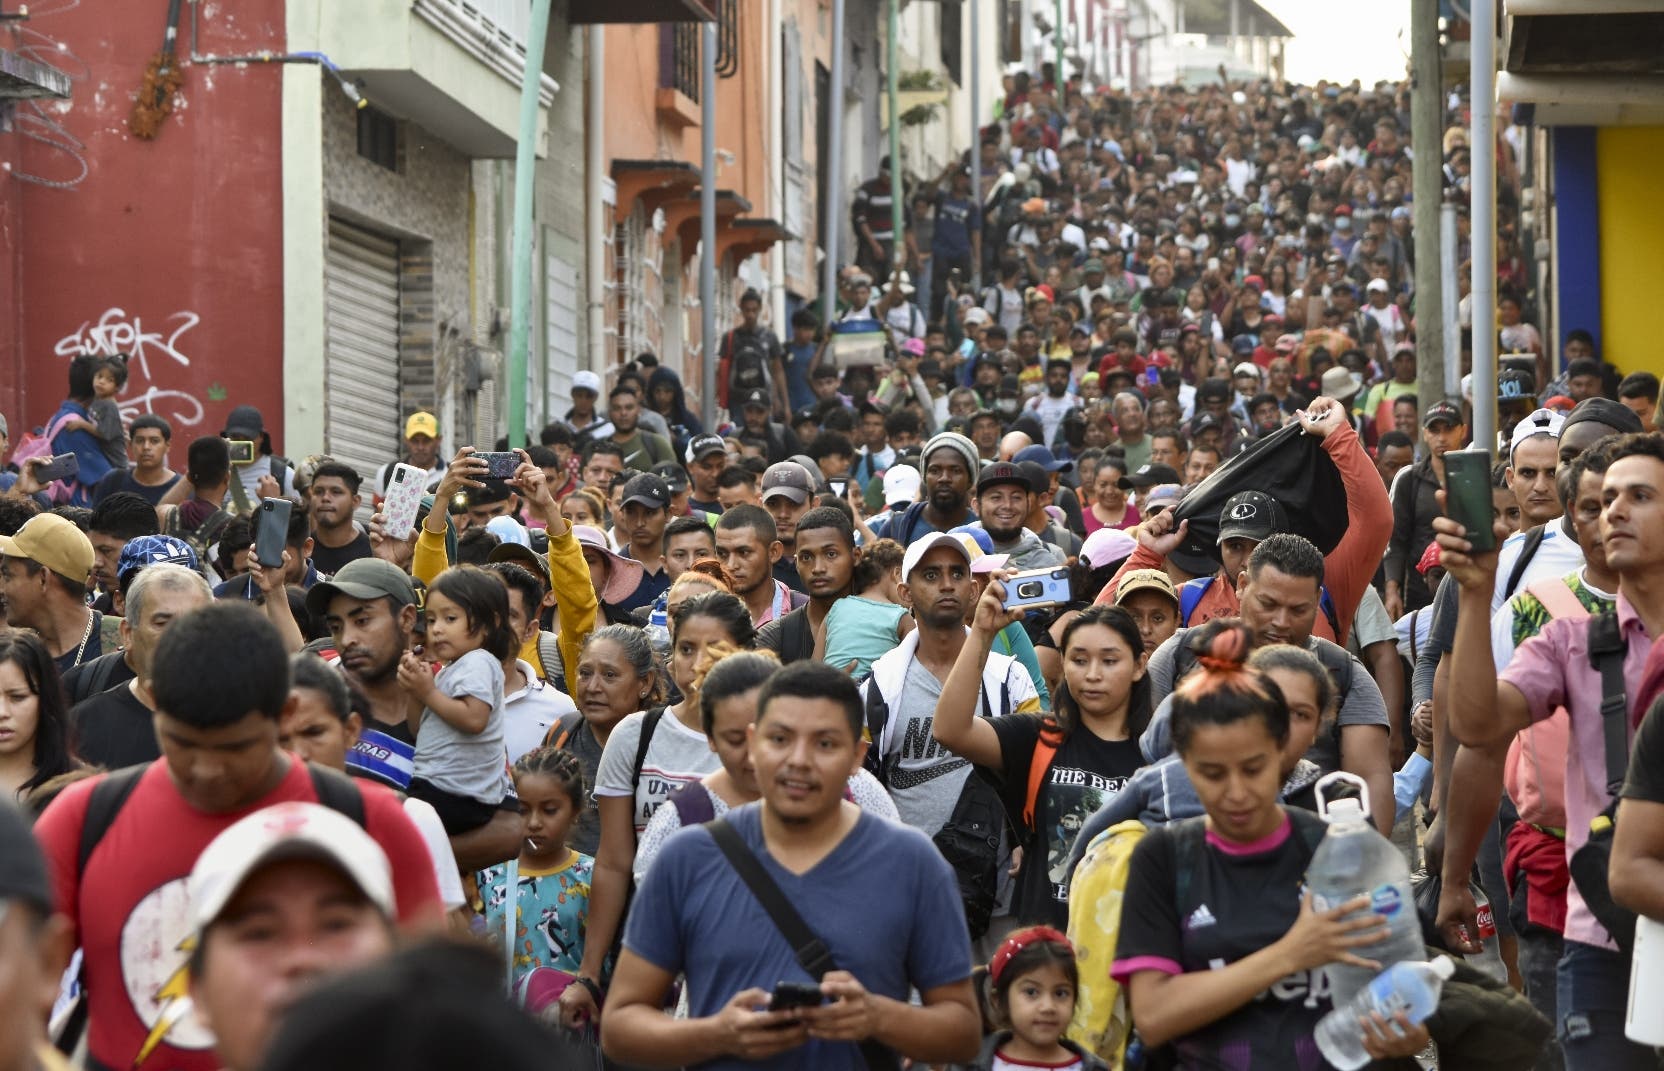 Sale viacrucis con 5 mil migrantes;  piden justicia